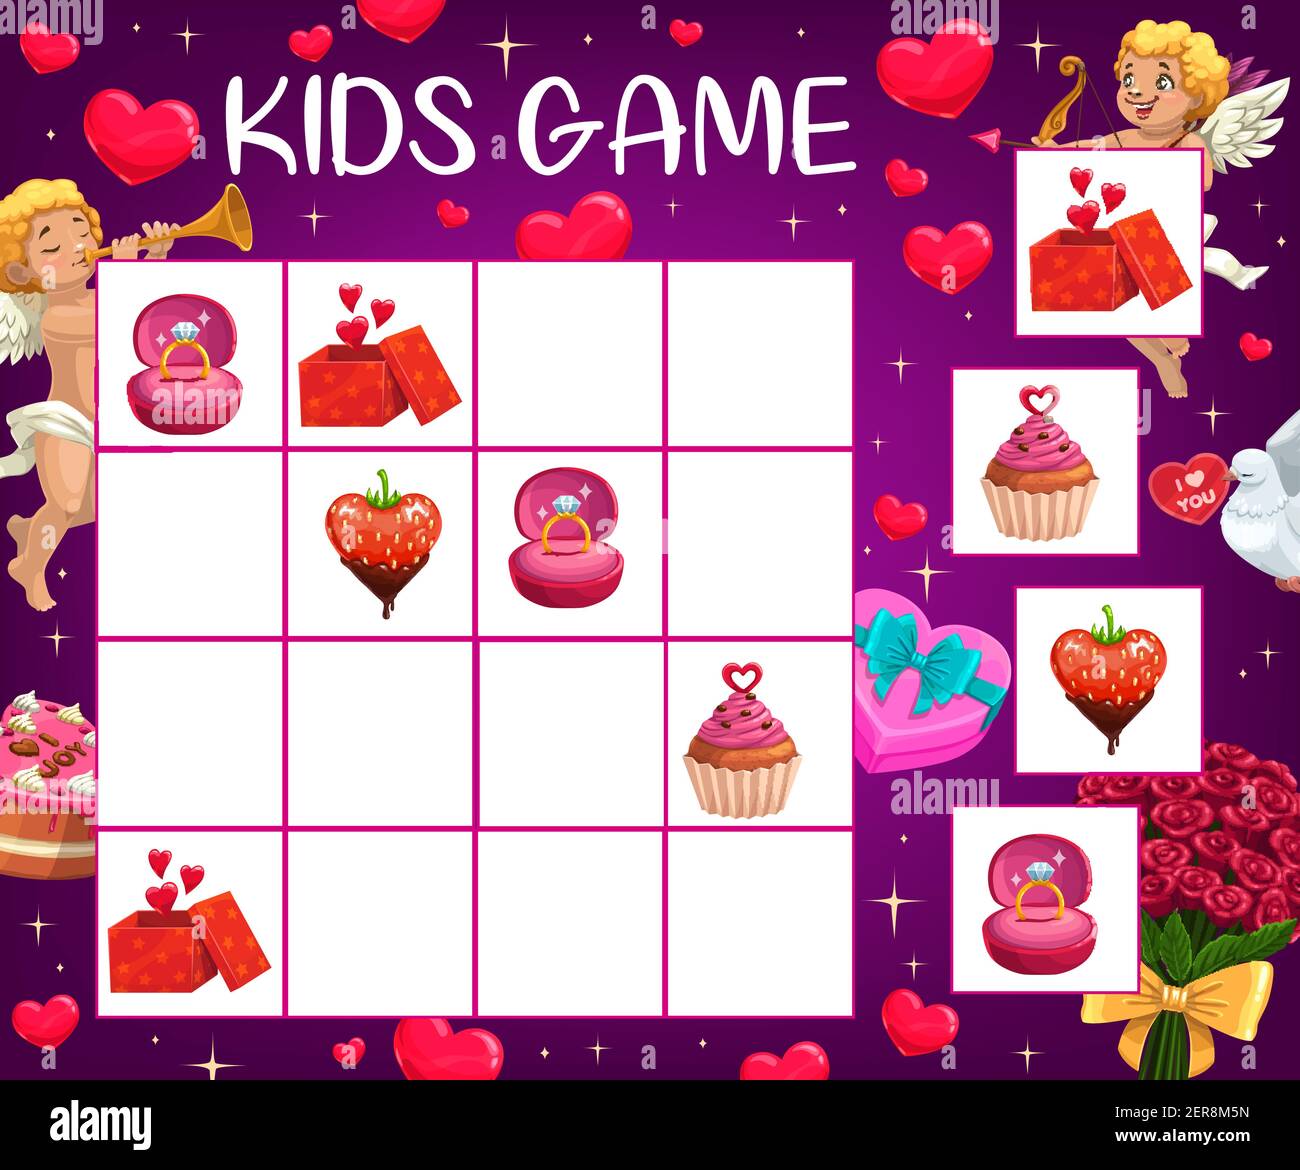 Saint Valentinstag Kinder logische Puzzle mit romantischen Geschenken. Kind  rebus Spiel, Kind Kreuzworträtsel oder spielen Aktivität. Verlobungsring,  geschenkbox und Tasse Stock-Vektorgrafik - Alamy